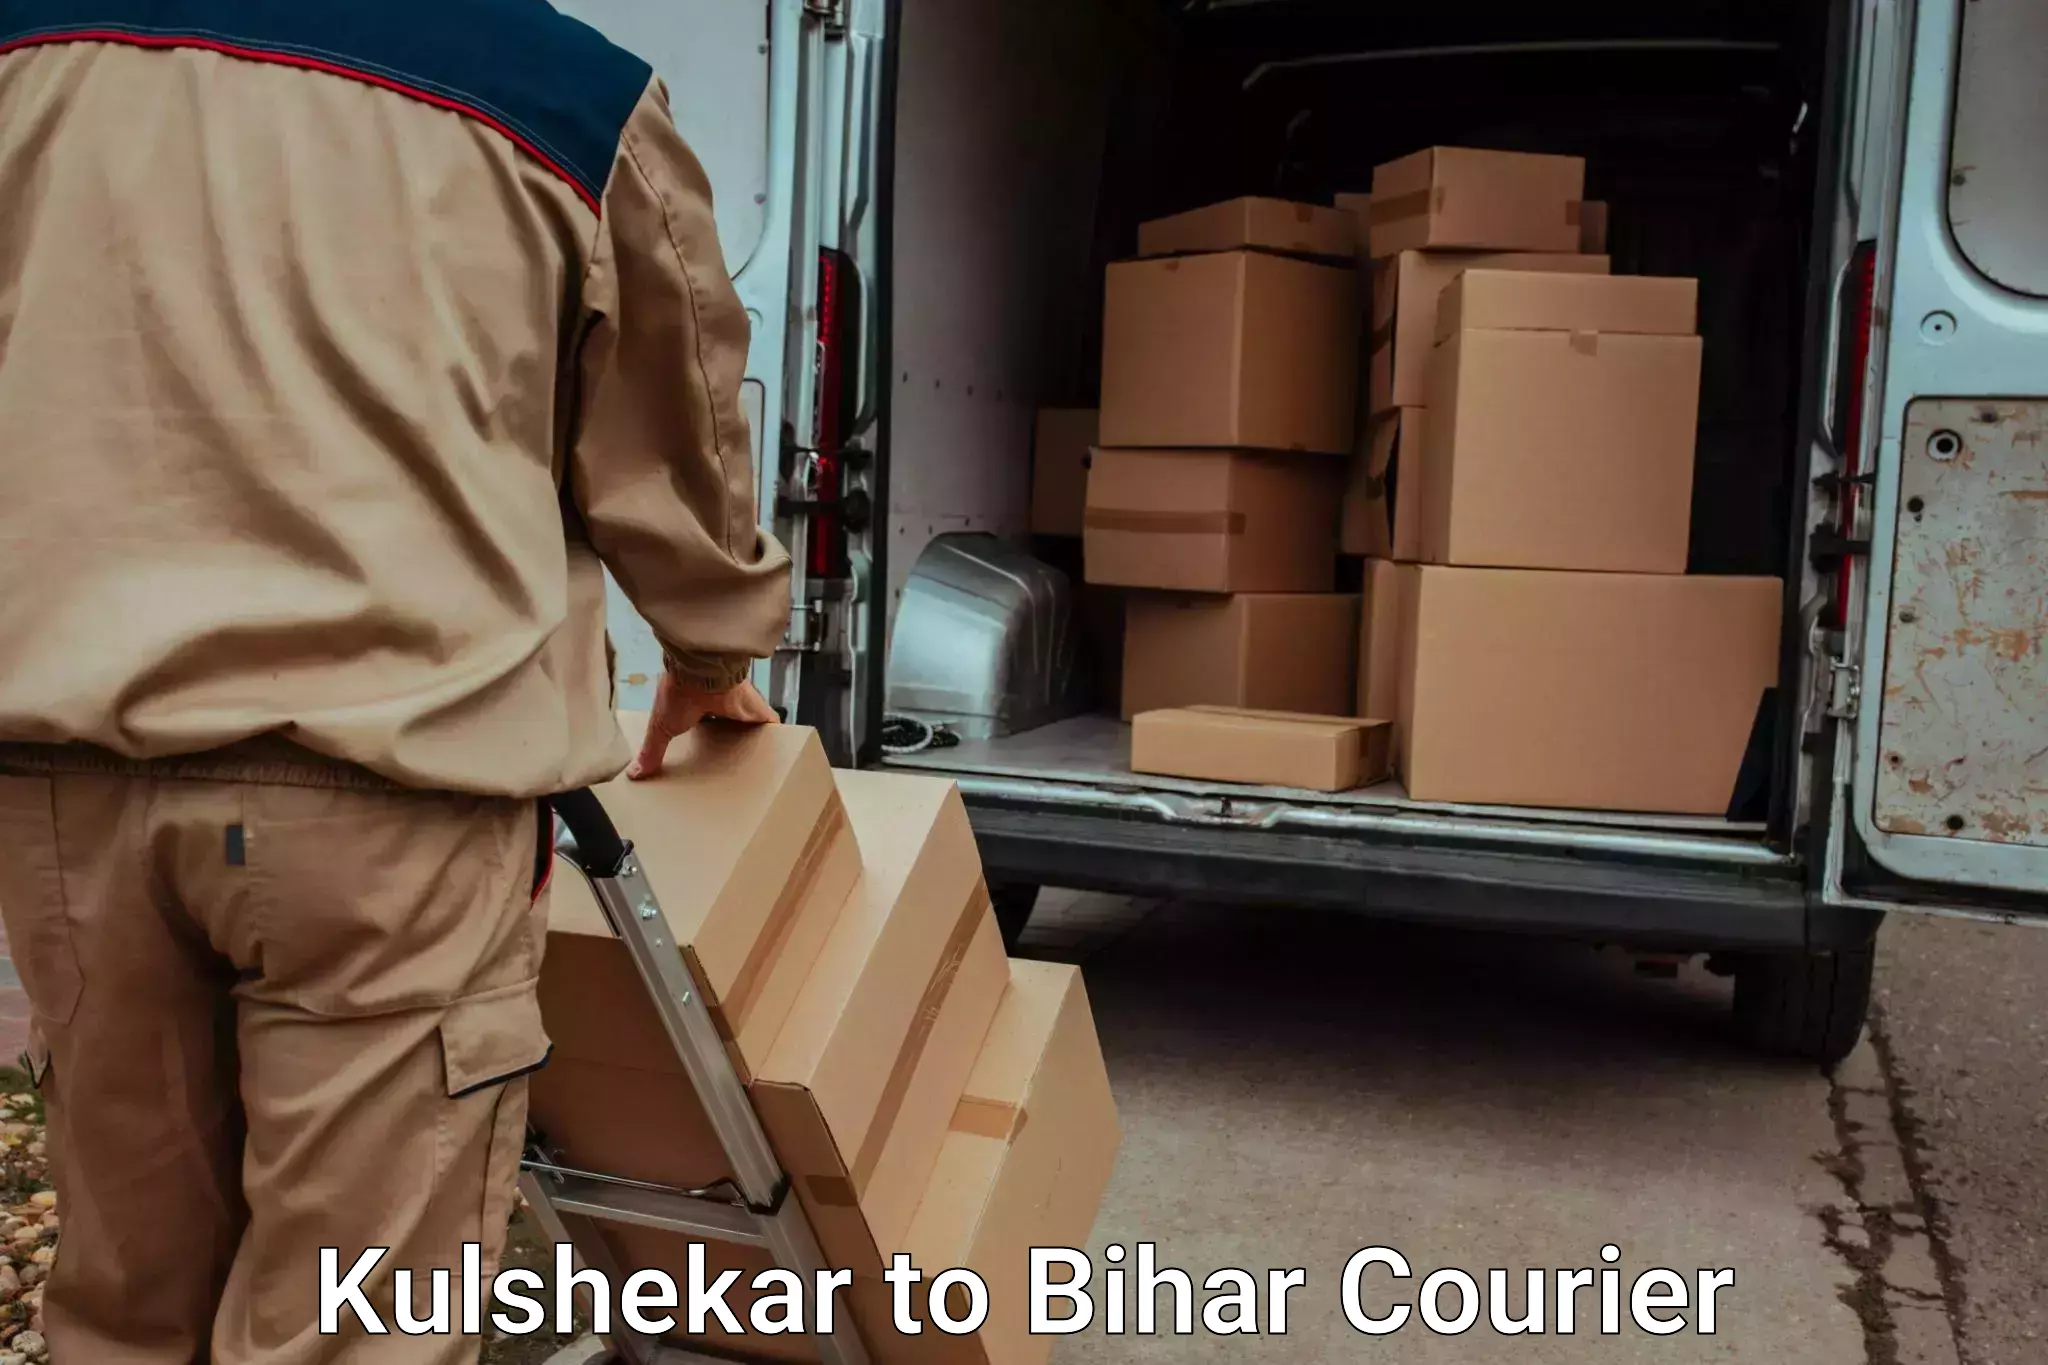 Baggage courier FAQs Kulshekar to Bihar